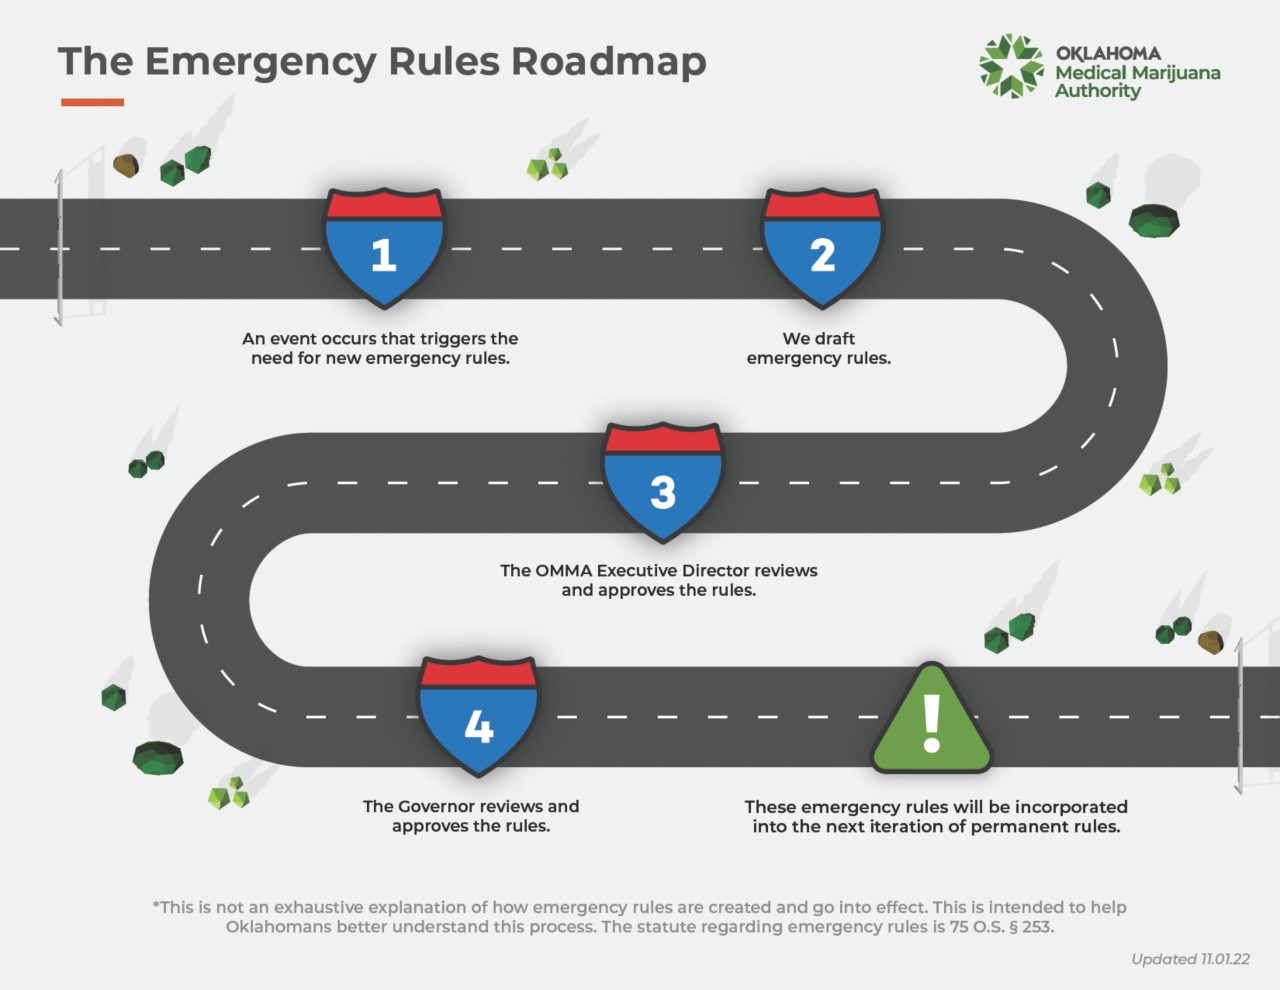 Emergency Rules Roadmap as of 11.24.2022